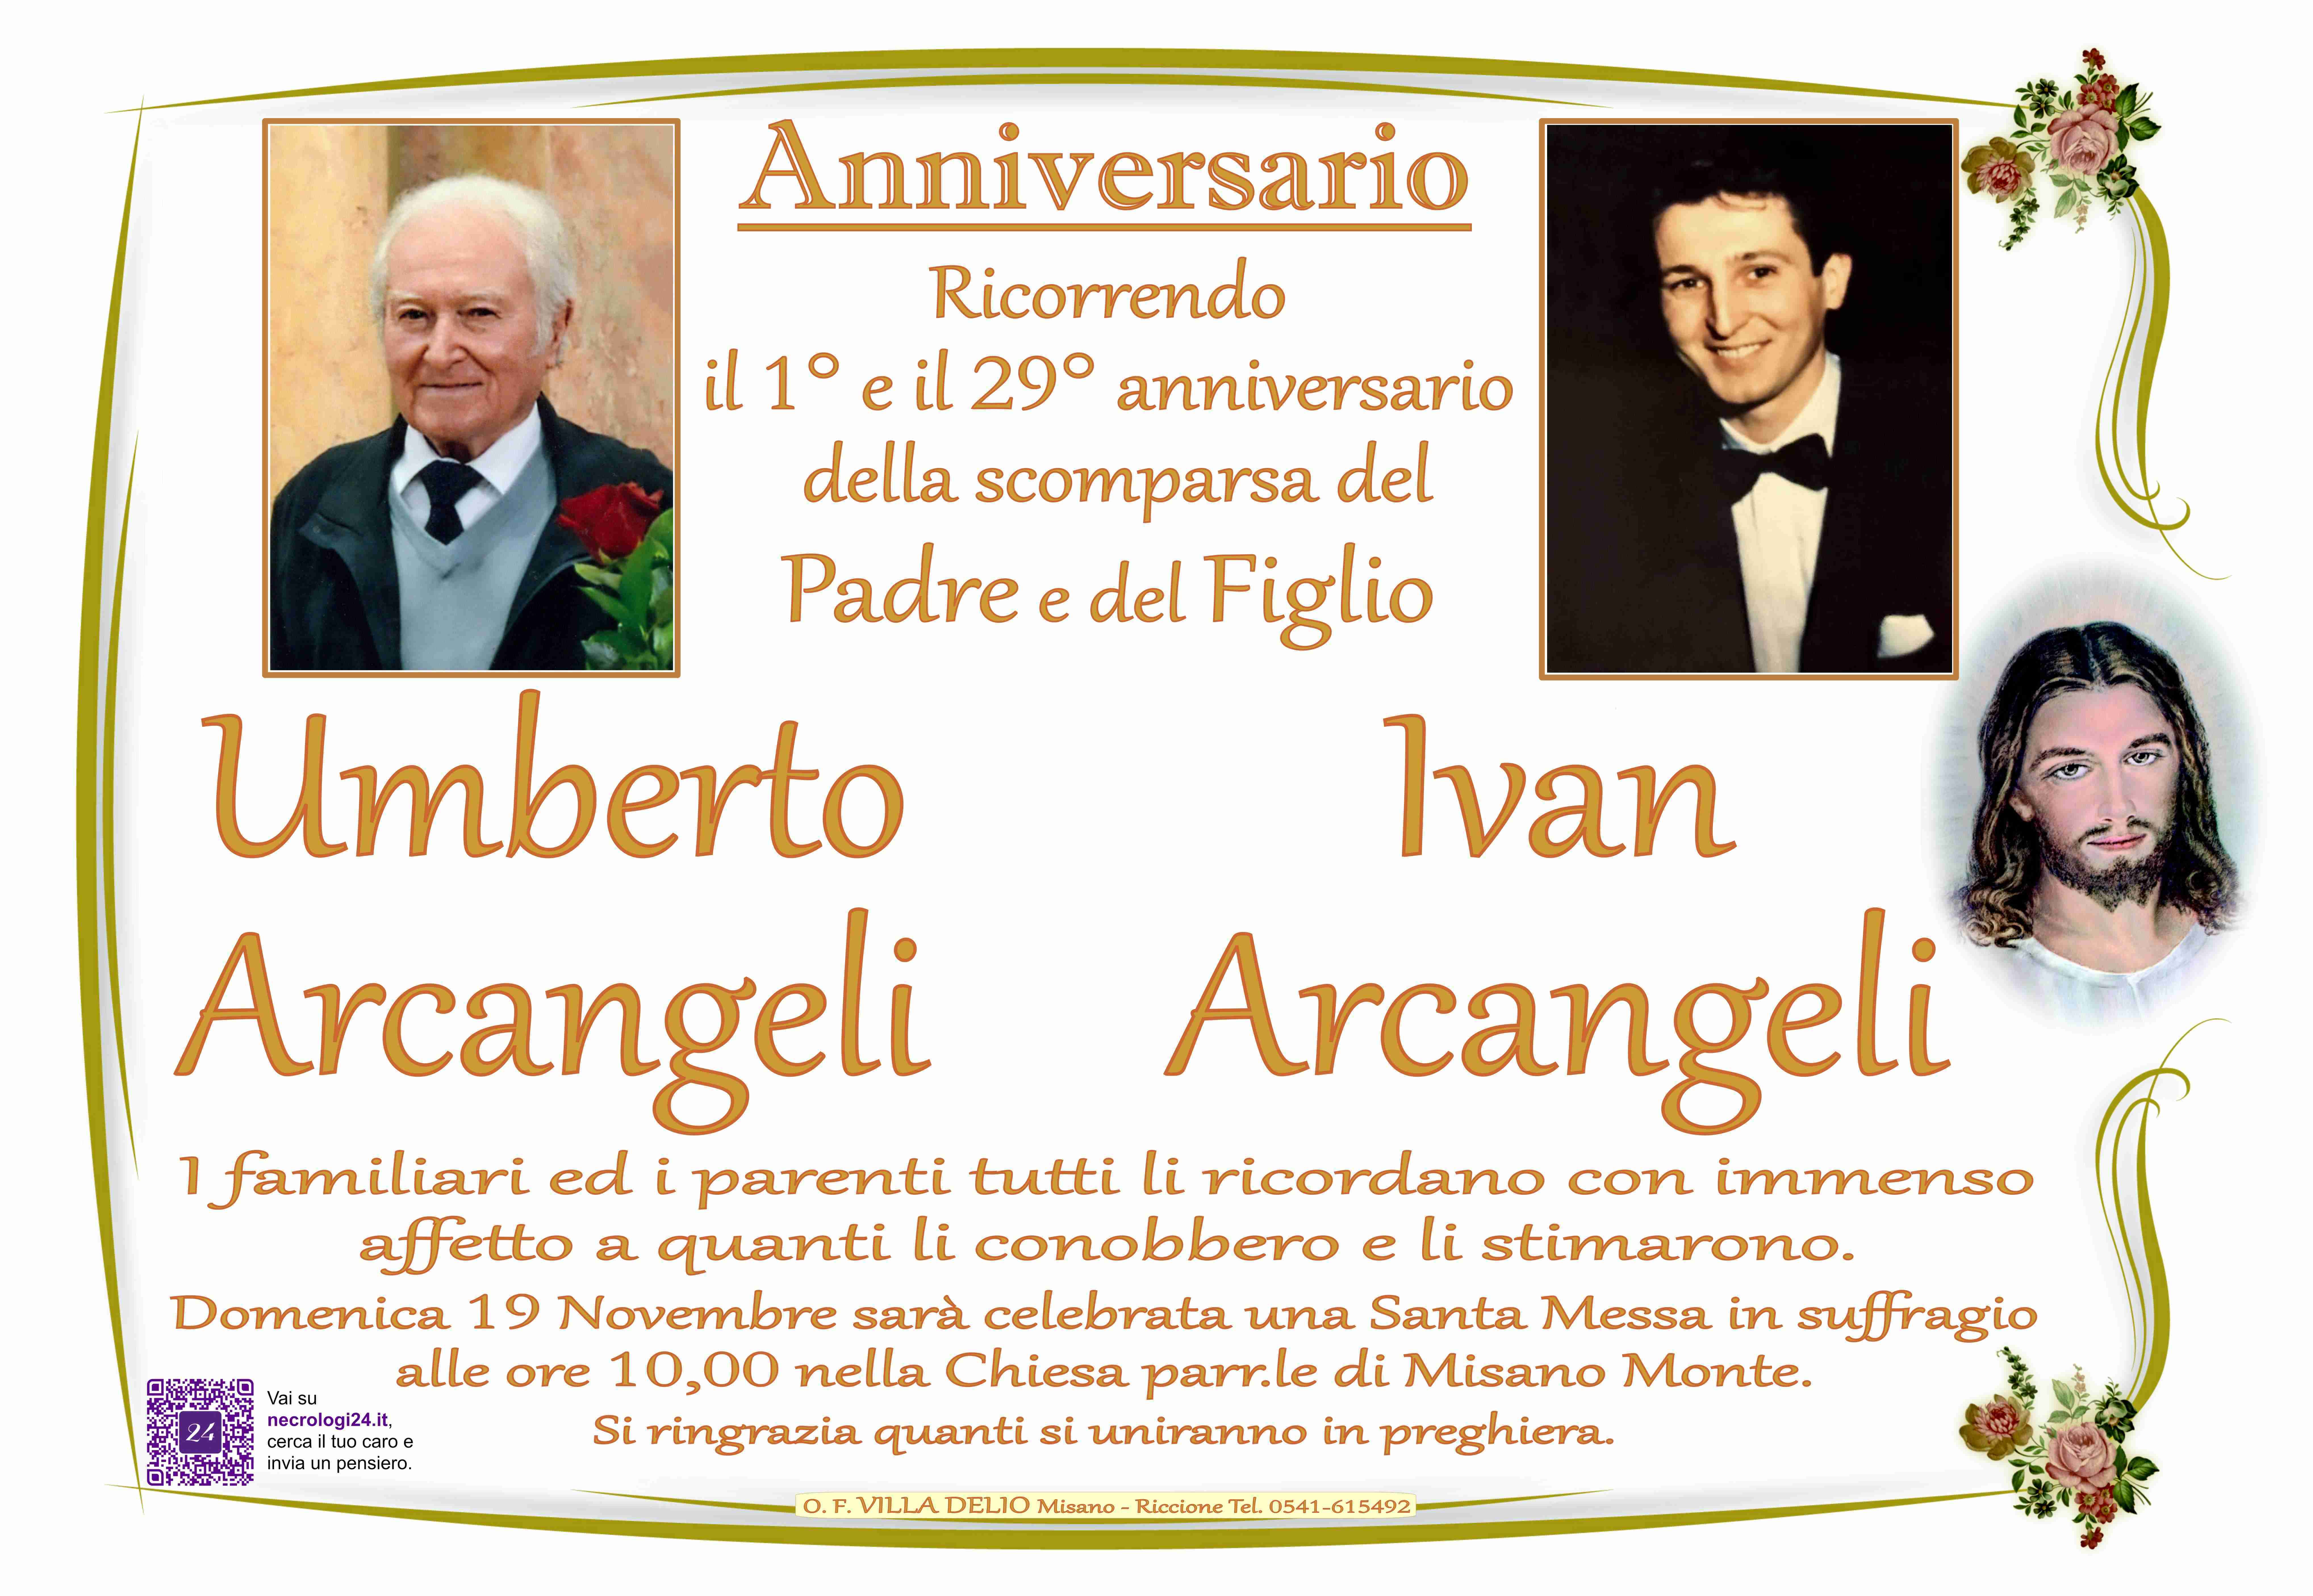 Umberto Arcangeli e Ivan Arcangeli